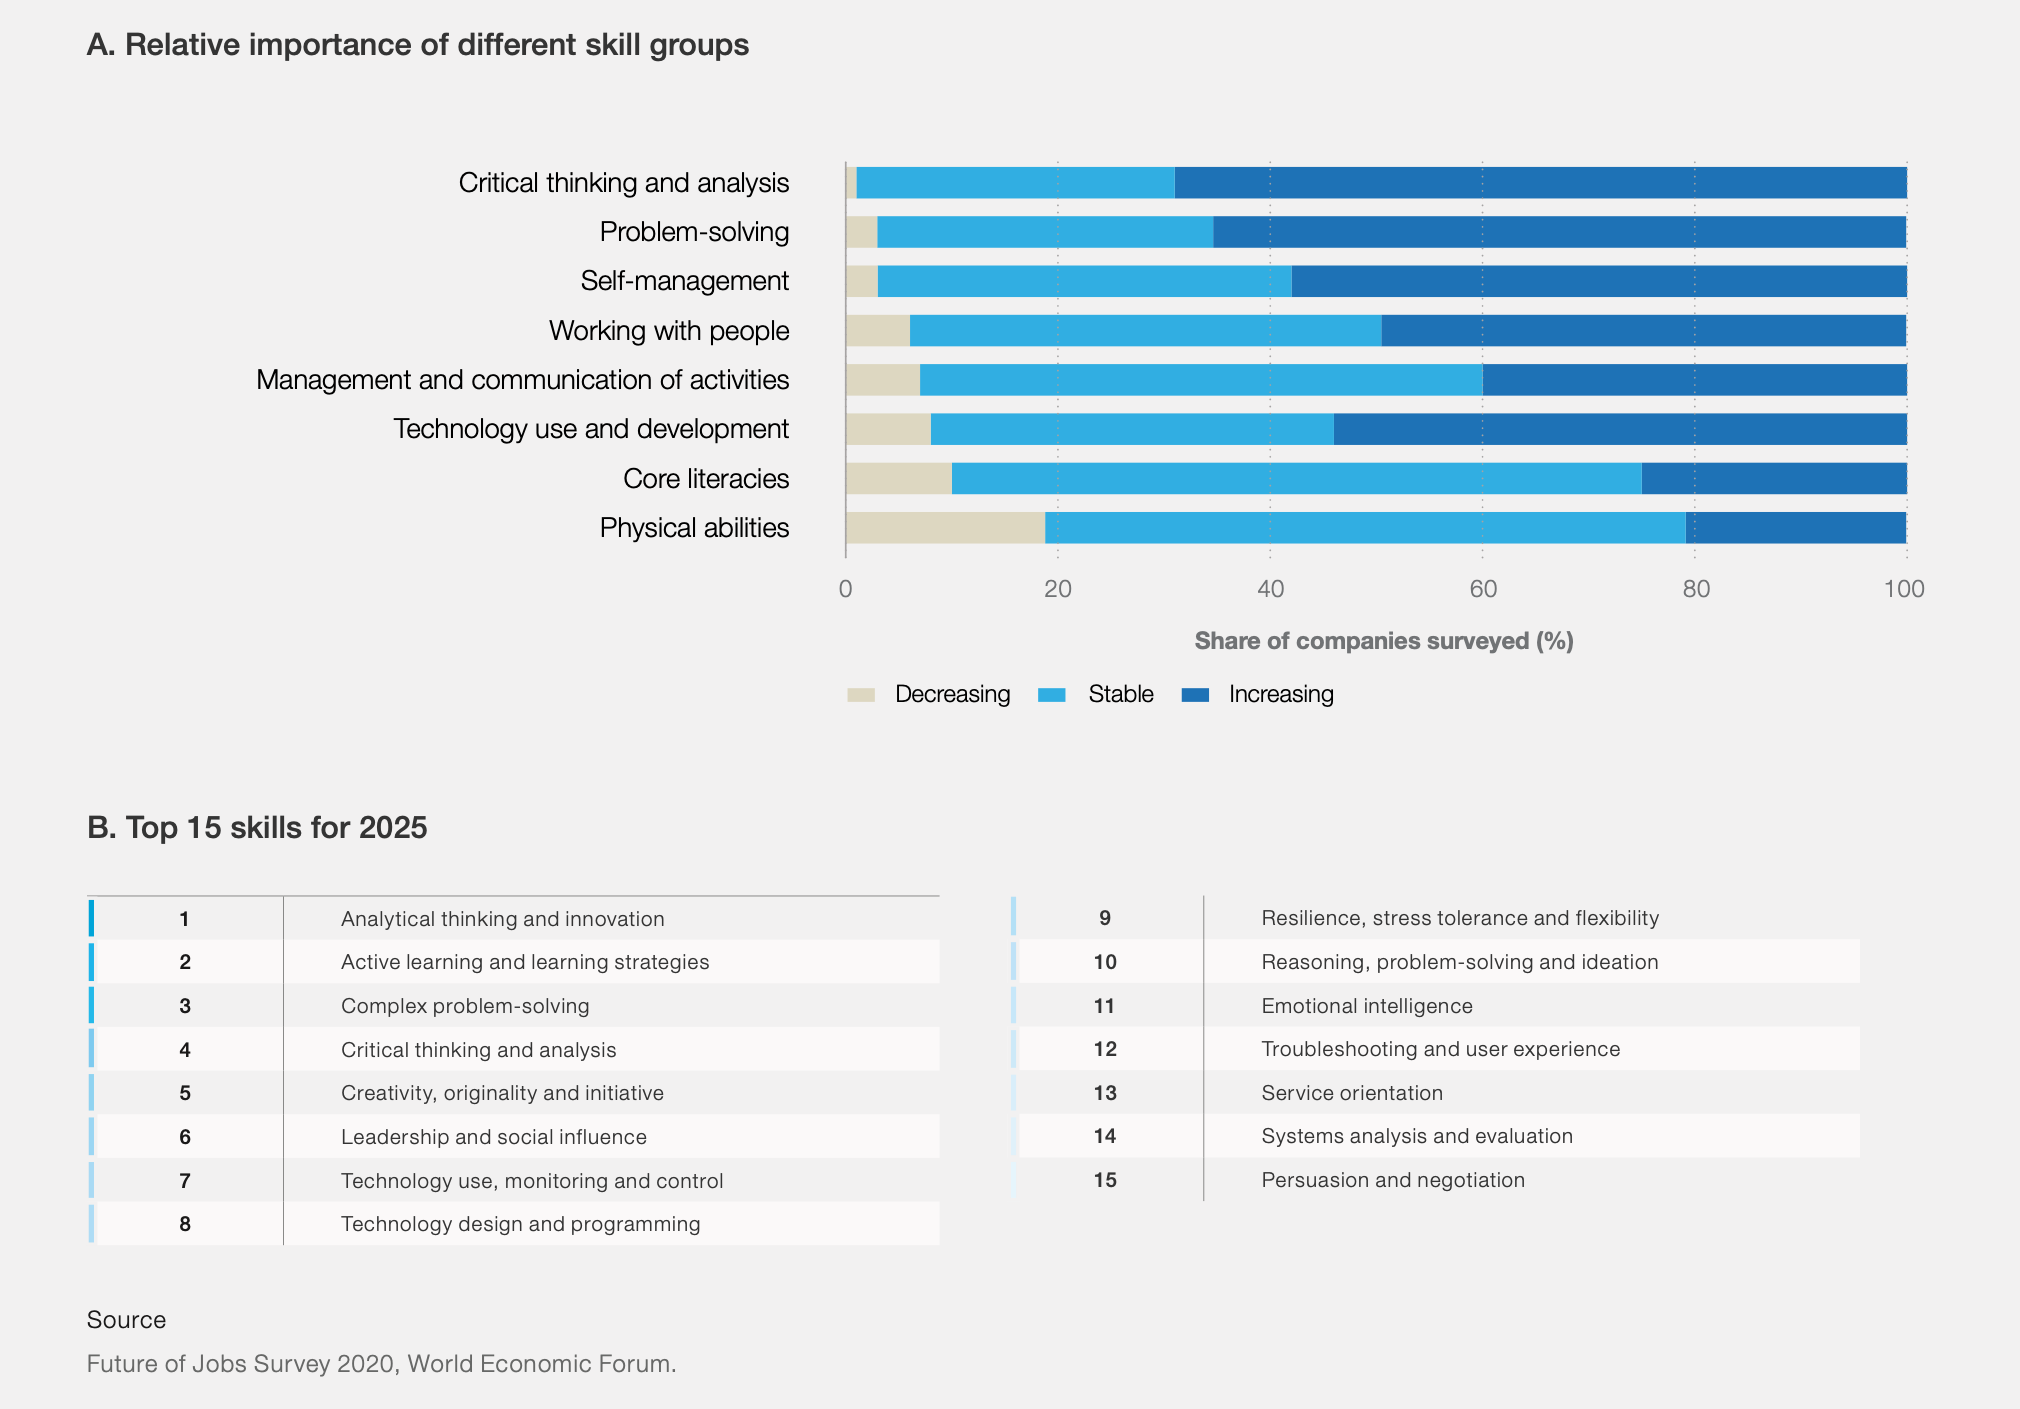 Recorte do relatório do Fórum Econômico Mundial de 2020 sobre o futuro do trabalho. O trecho mostran as habilidades mais importantes para as empresas até 2025.